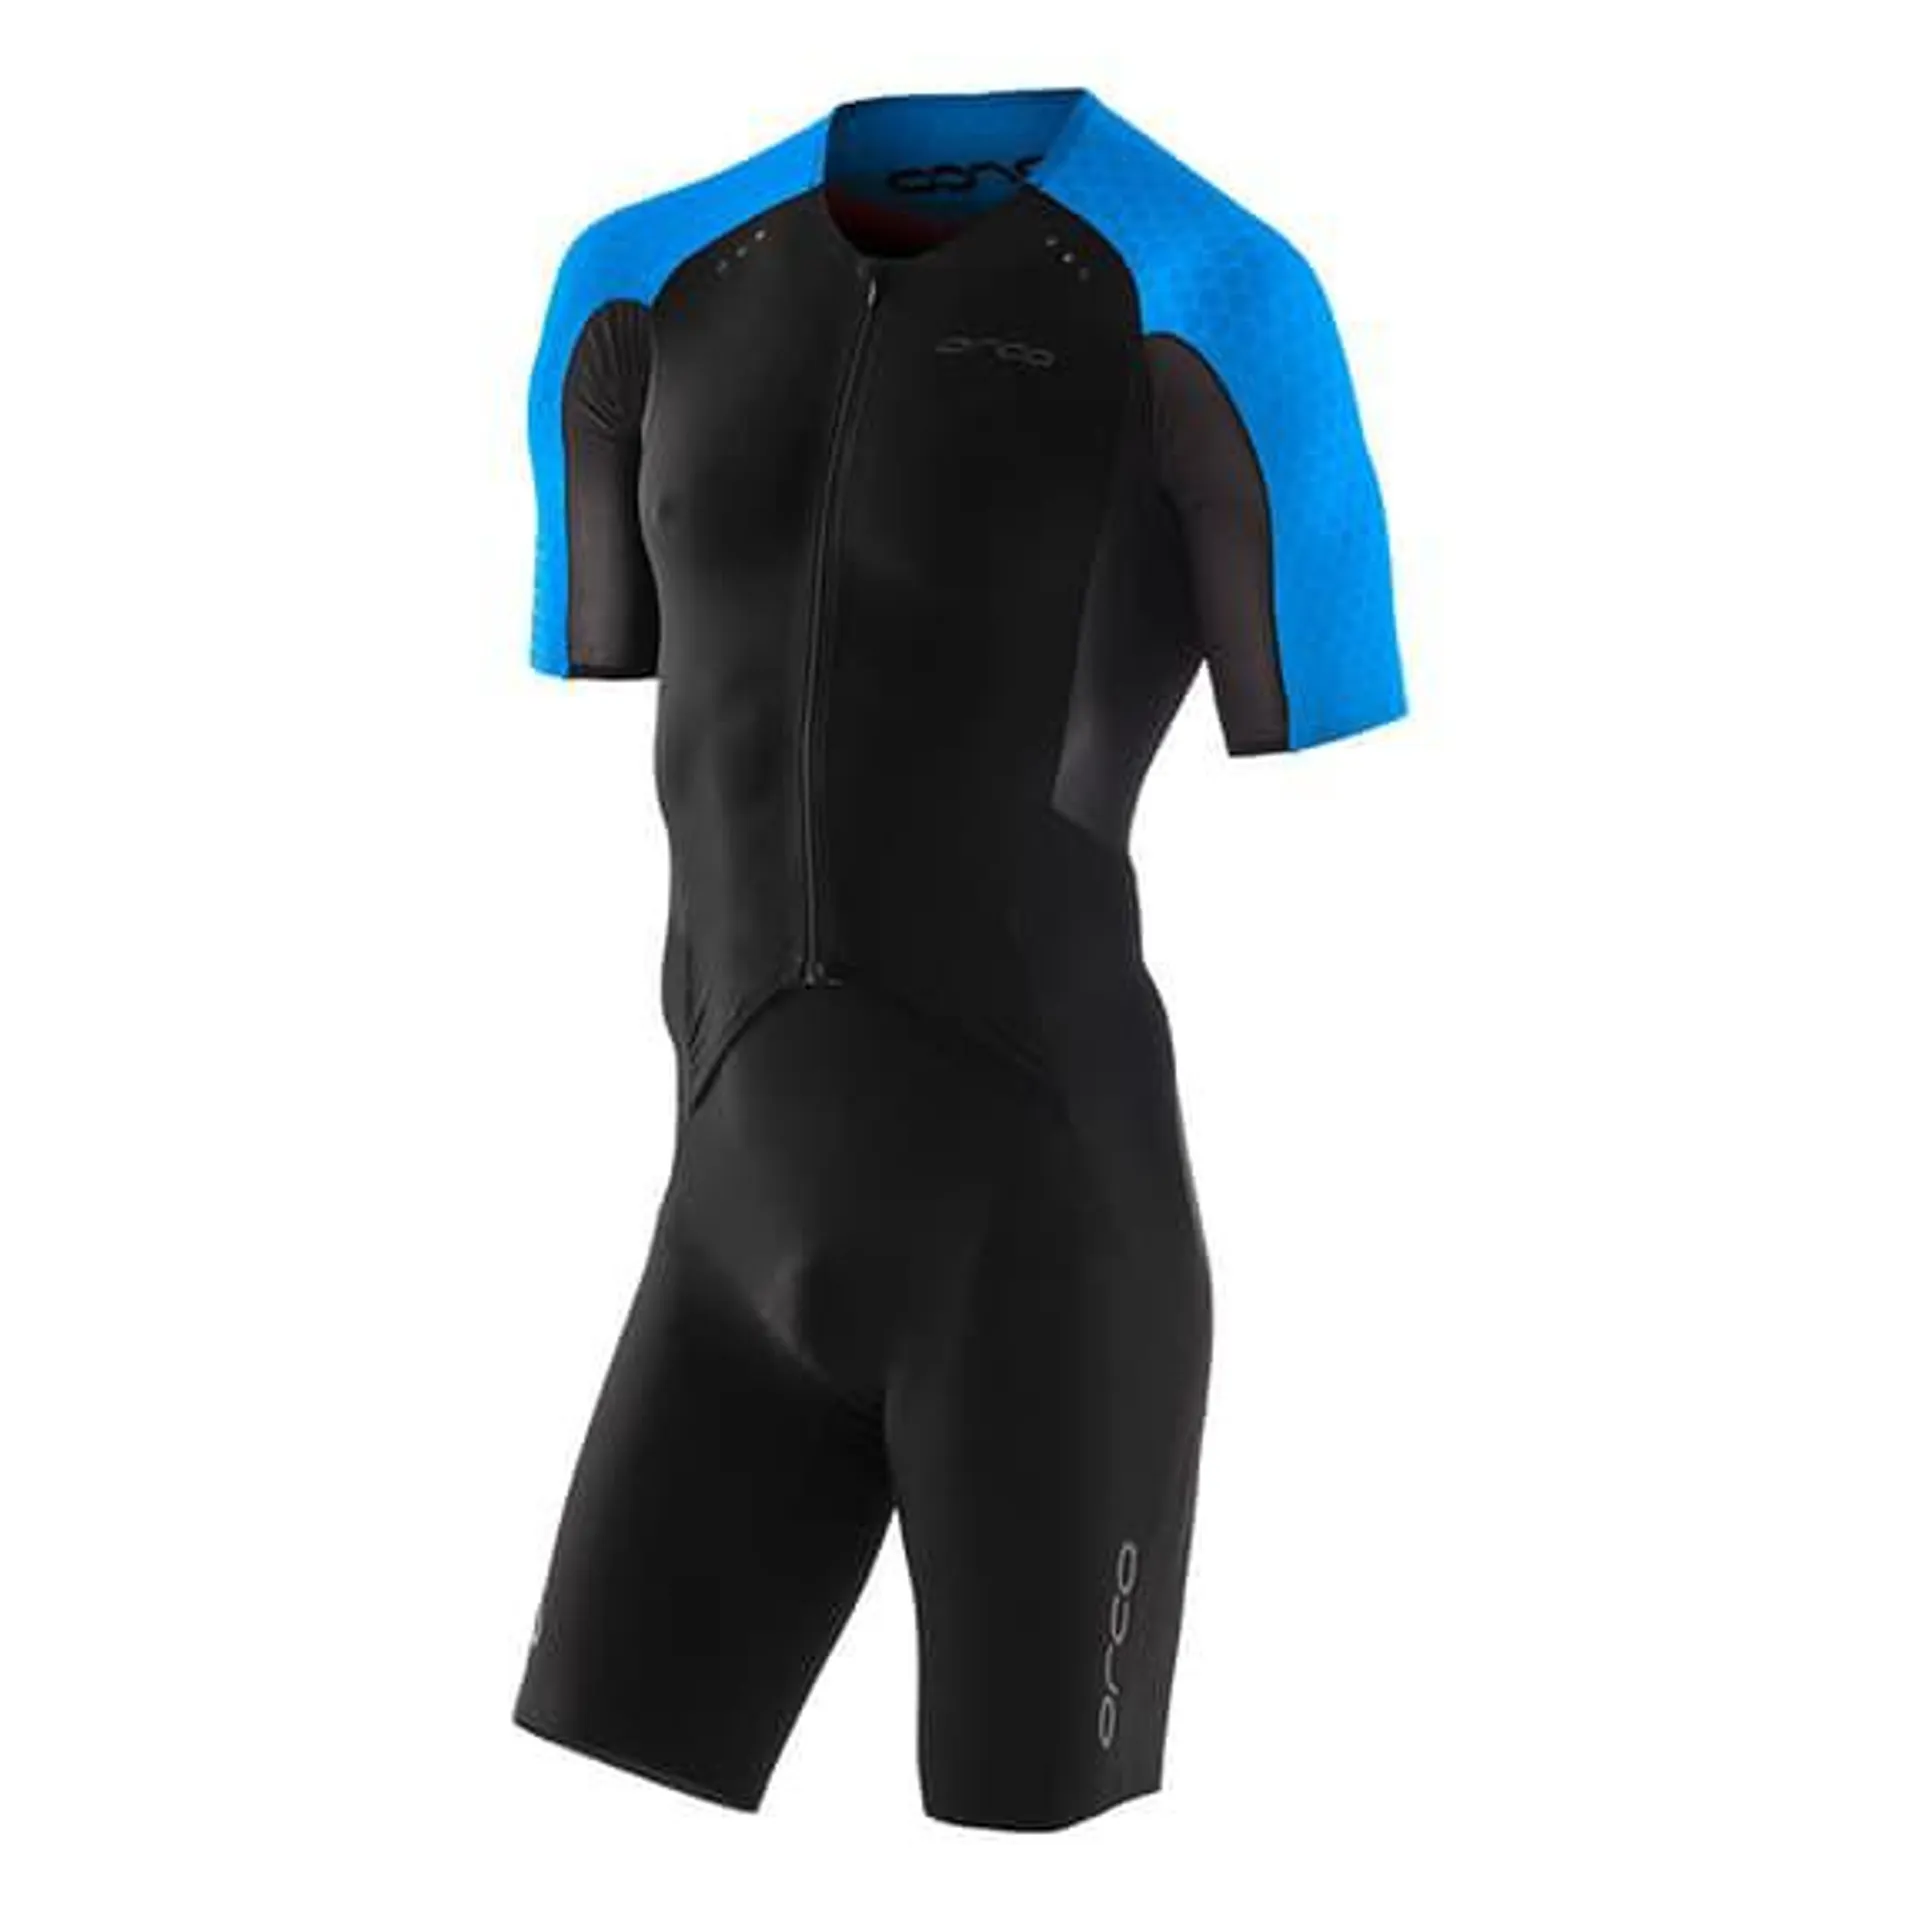 Combinaison de triathlon Orca RS1 Dream Kona manche courte noir bleu